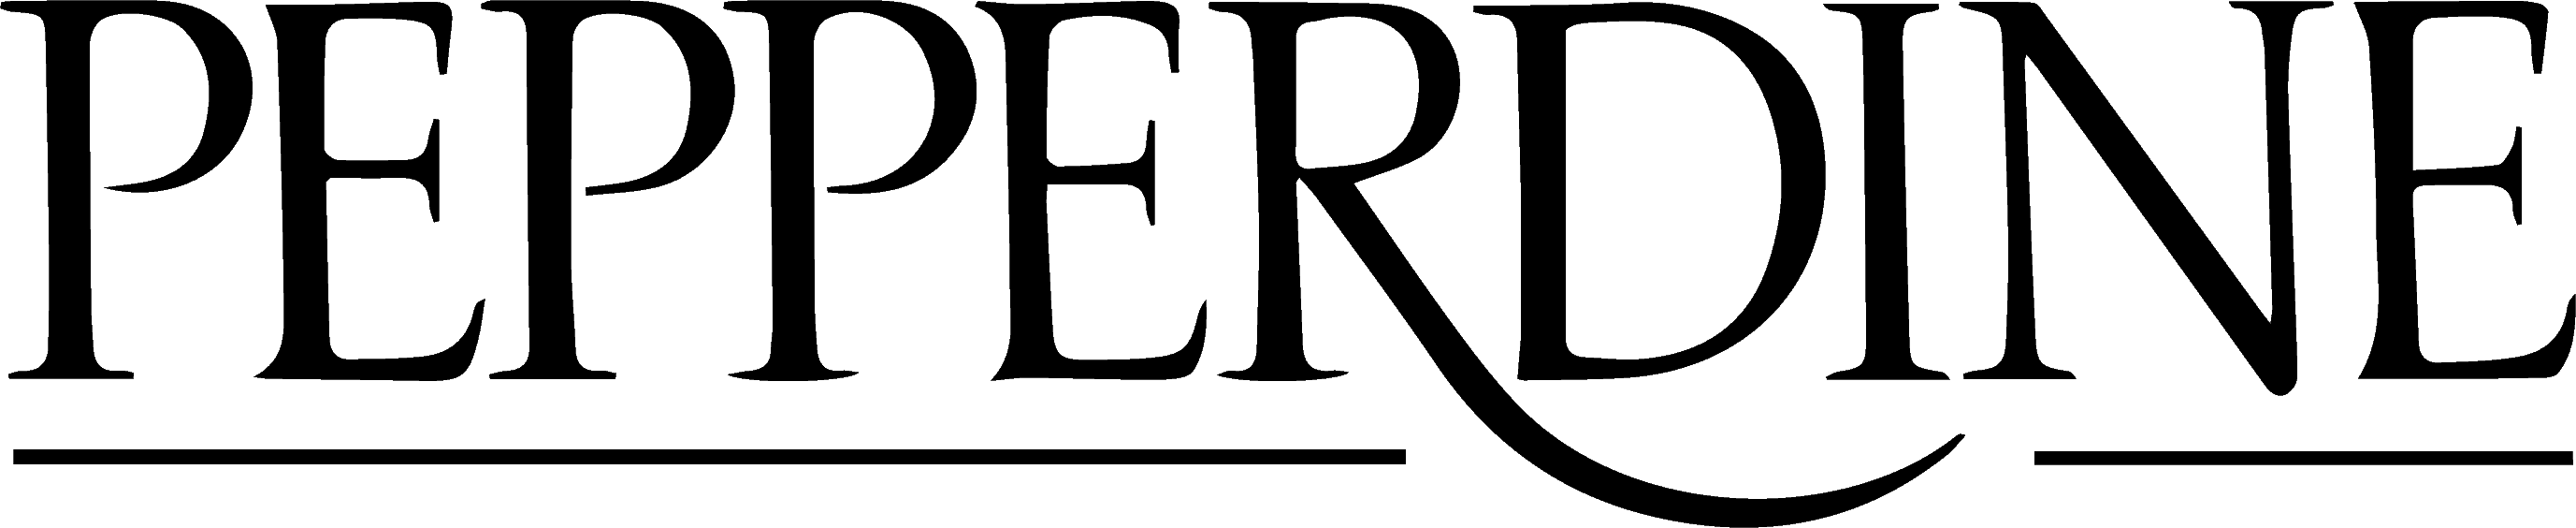 Pepperdine University logo in black